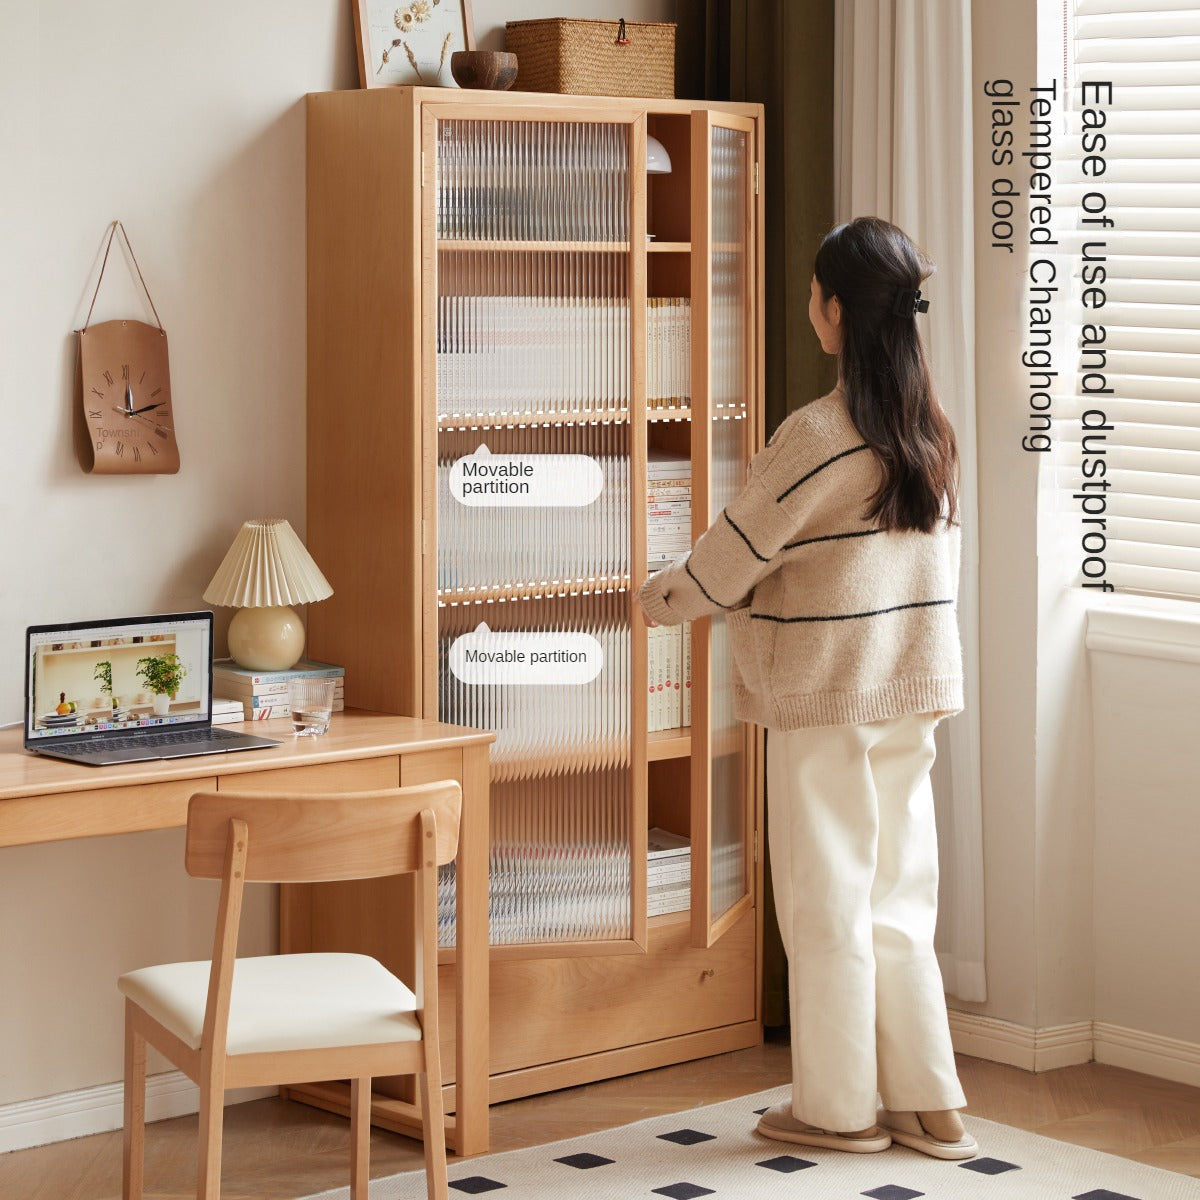 European Beech solid wood bookshelf, glass door storage display cabinet"